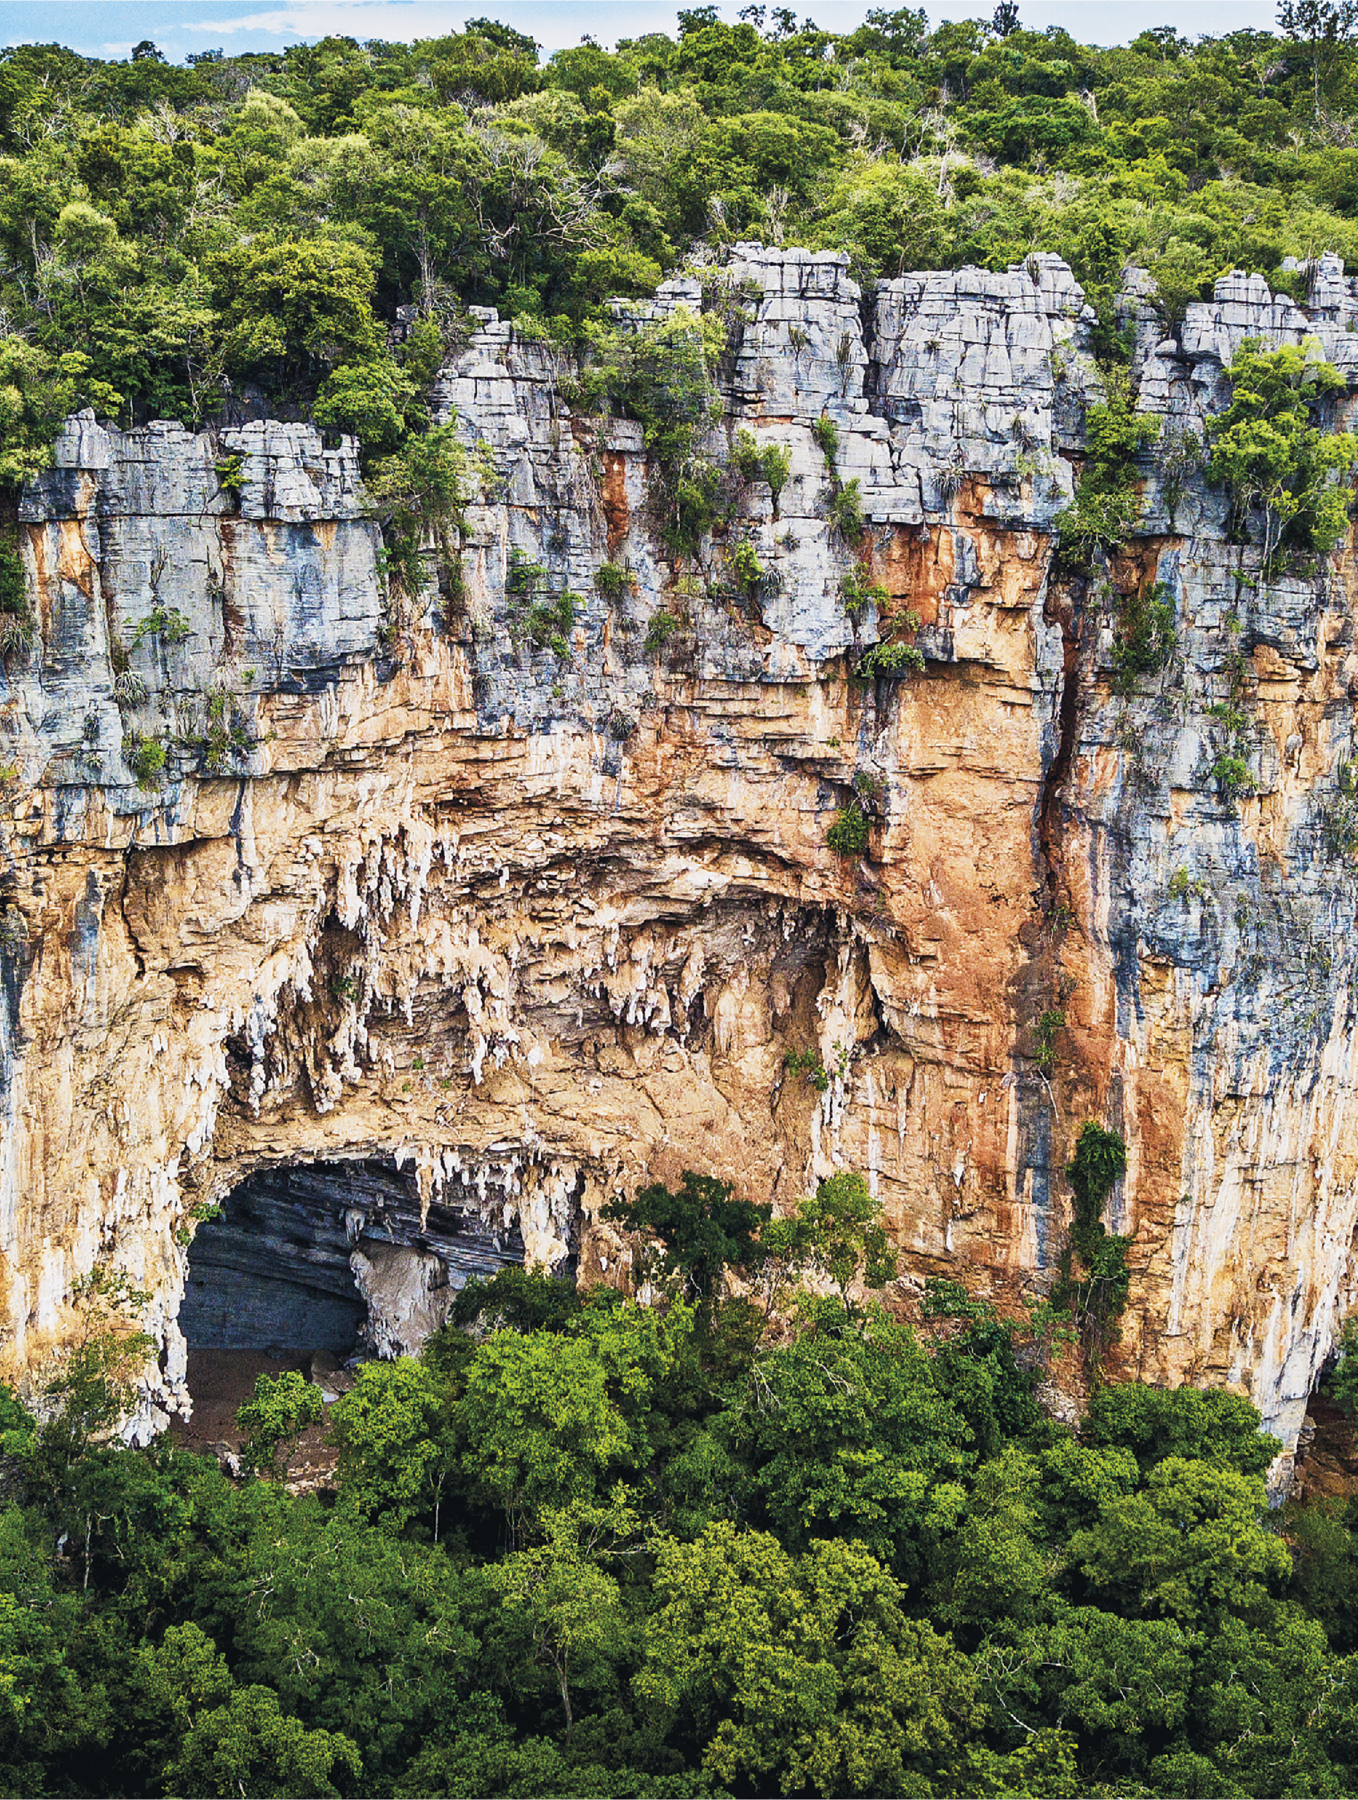 Fotografia. Imagem de paisagem de um paredão rochoso coberto, na parte de cima por vegetação densa. A parte superior do paredão tem rochas cinza azuladas. No meio e na base a cor é marrom claro. Na base, à esquerda, temos a entrada de uma caverna emoldurada pelas rochas marrom e a presença de estalactites. Na pequena parte visível da caverna, observamos as rochas azuladas.